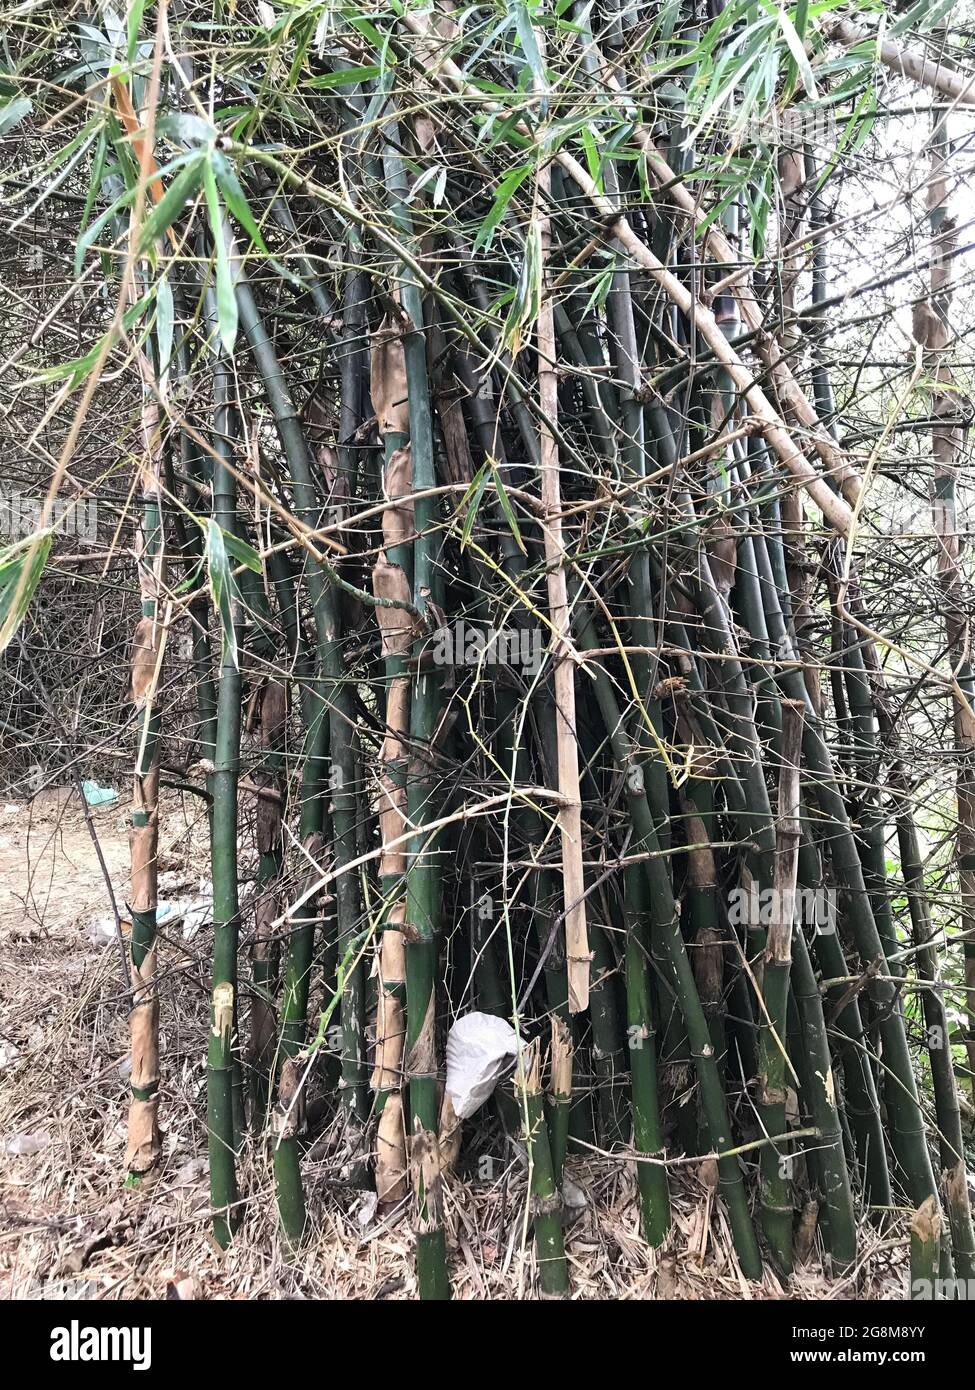 Beaucoup de bambous sont cultivés dans une forêt dense et semble si forte et vert foncé Banque D'Images